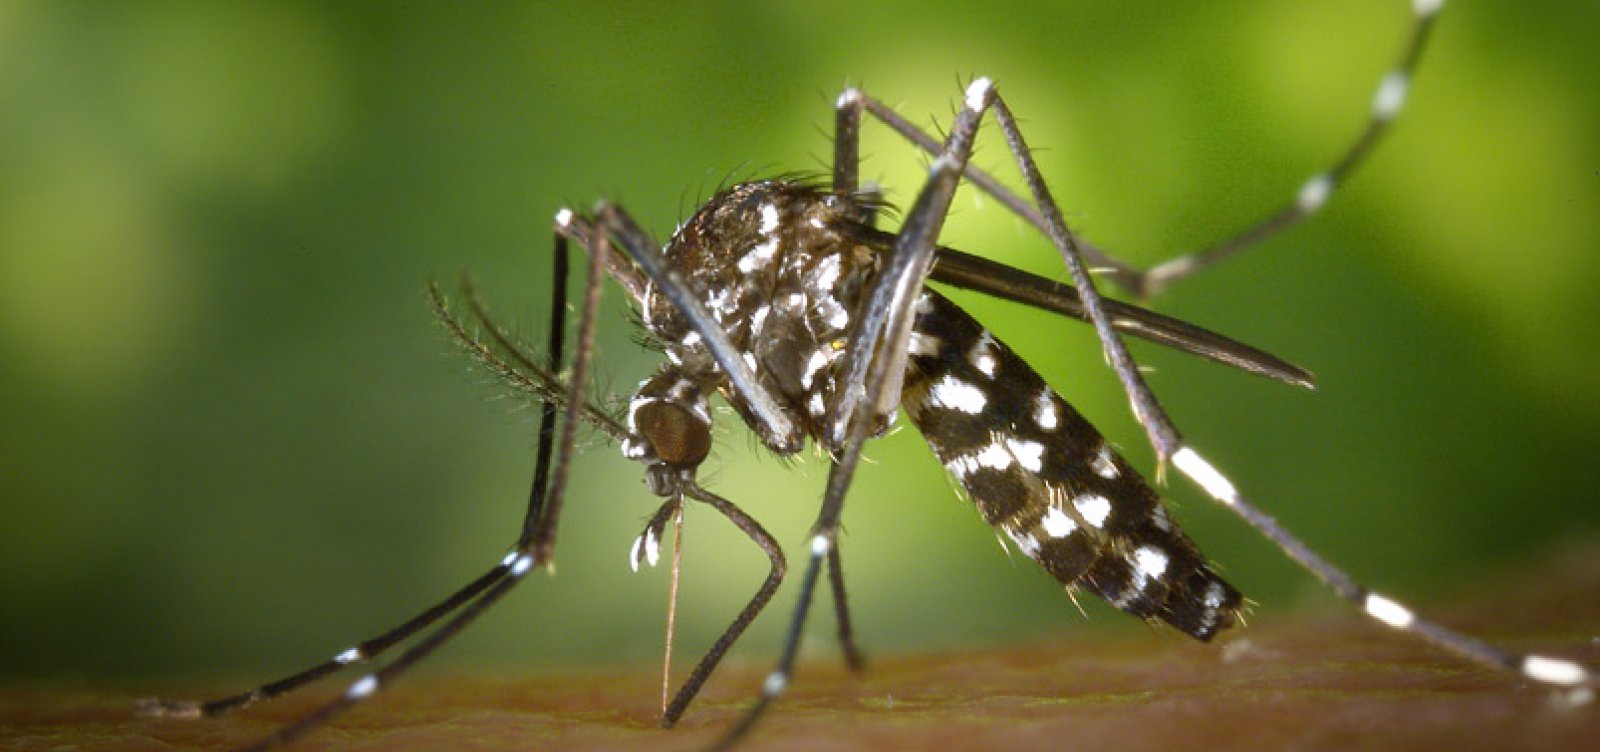 Criança de 4 anos morre por dengue em município da Bahia; estado contabiliza 84 mortes pela doença 